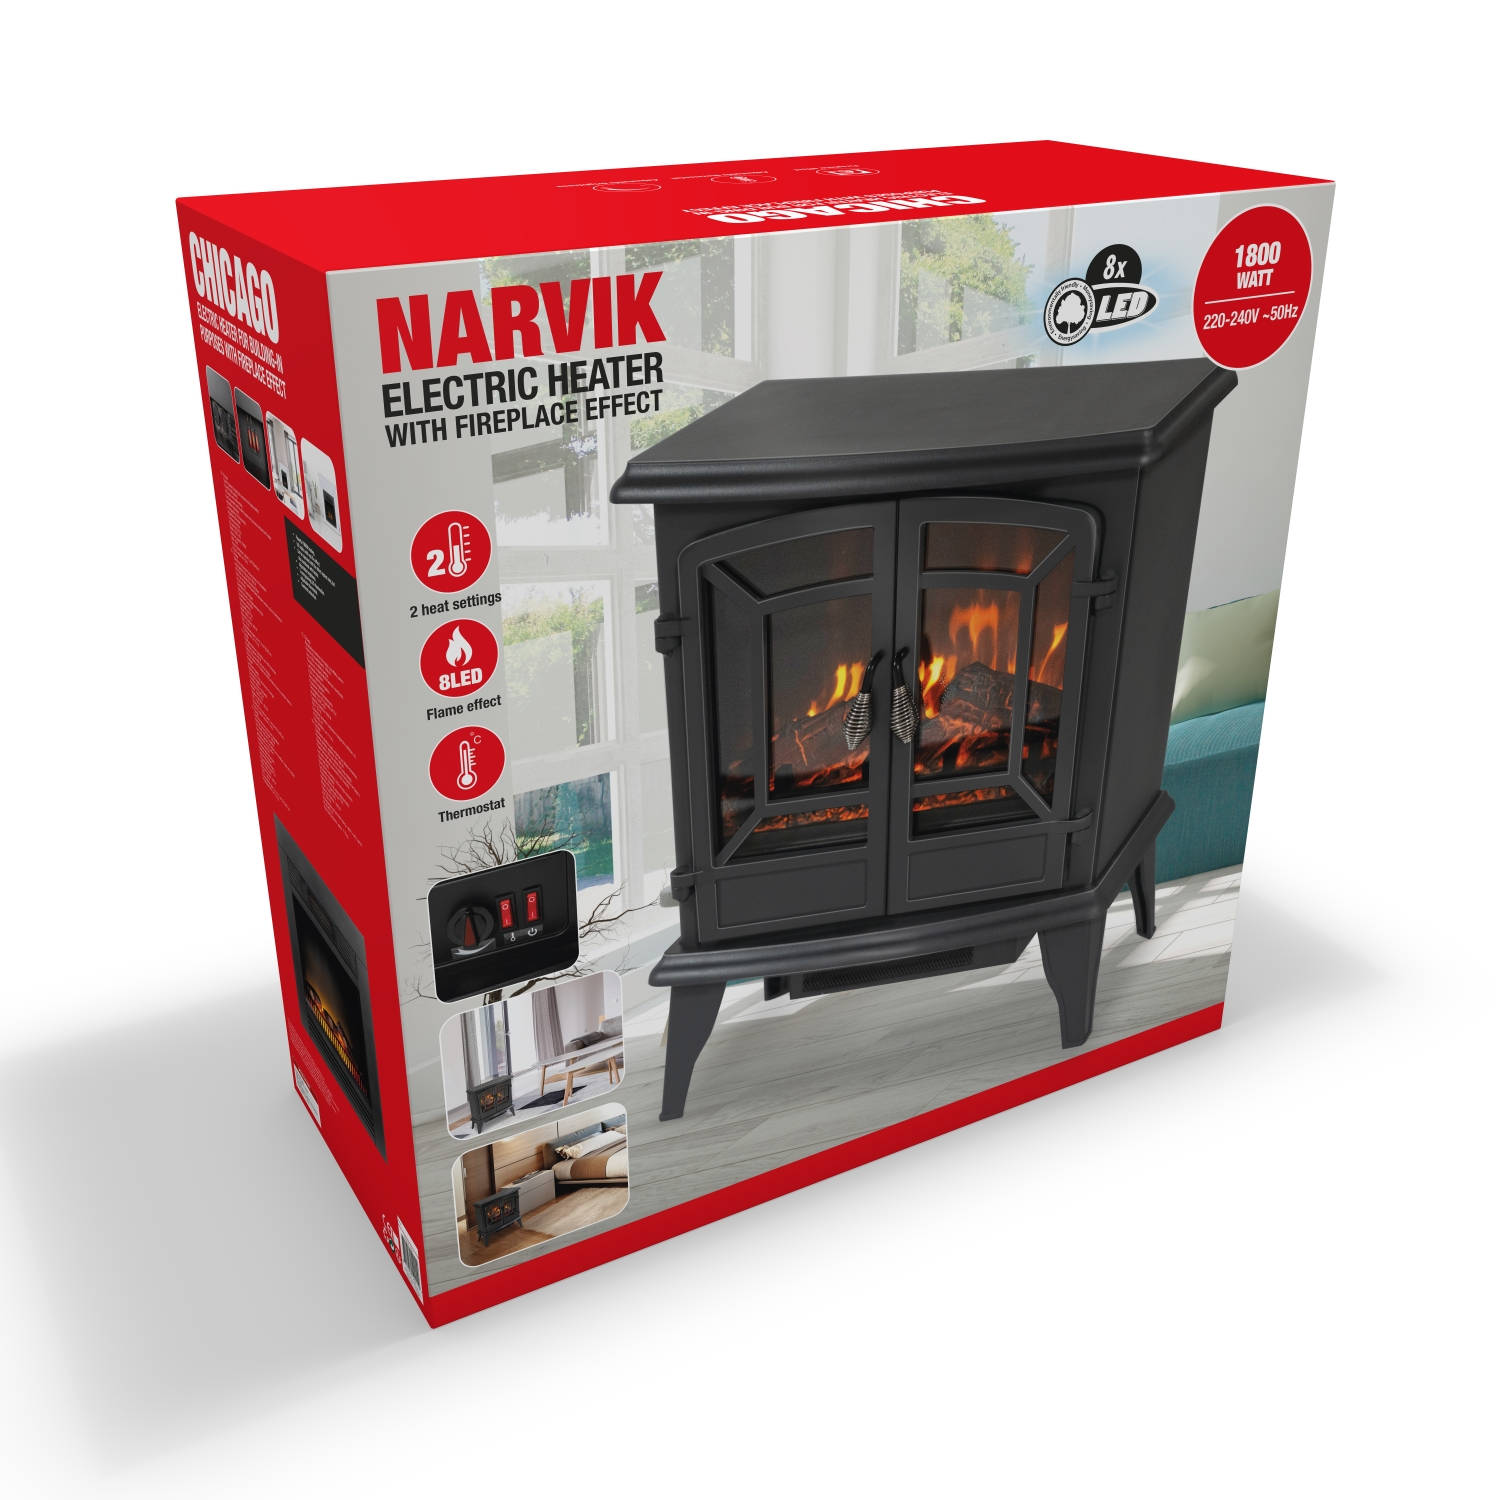 discretie Karu duidelijkheid Classic Fire Elektrische Sfeerhaard Narvik - LED - 1800 Watt - Zwart |  Blokker